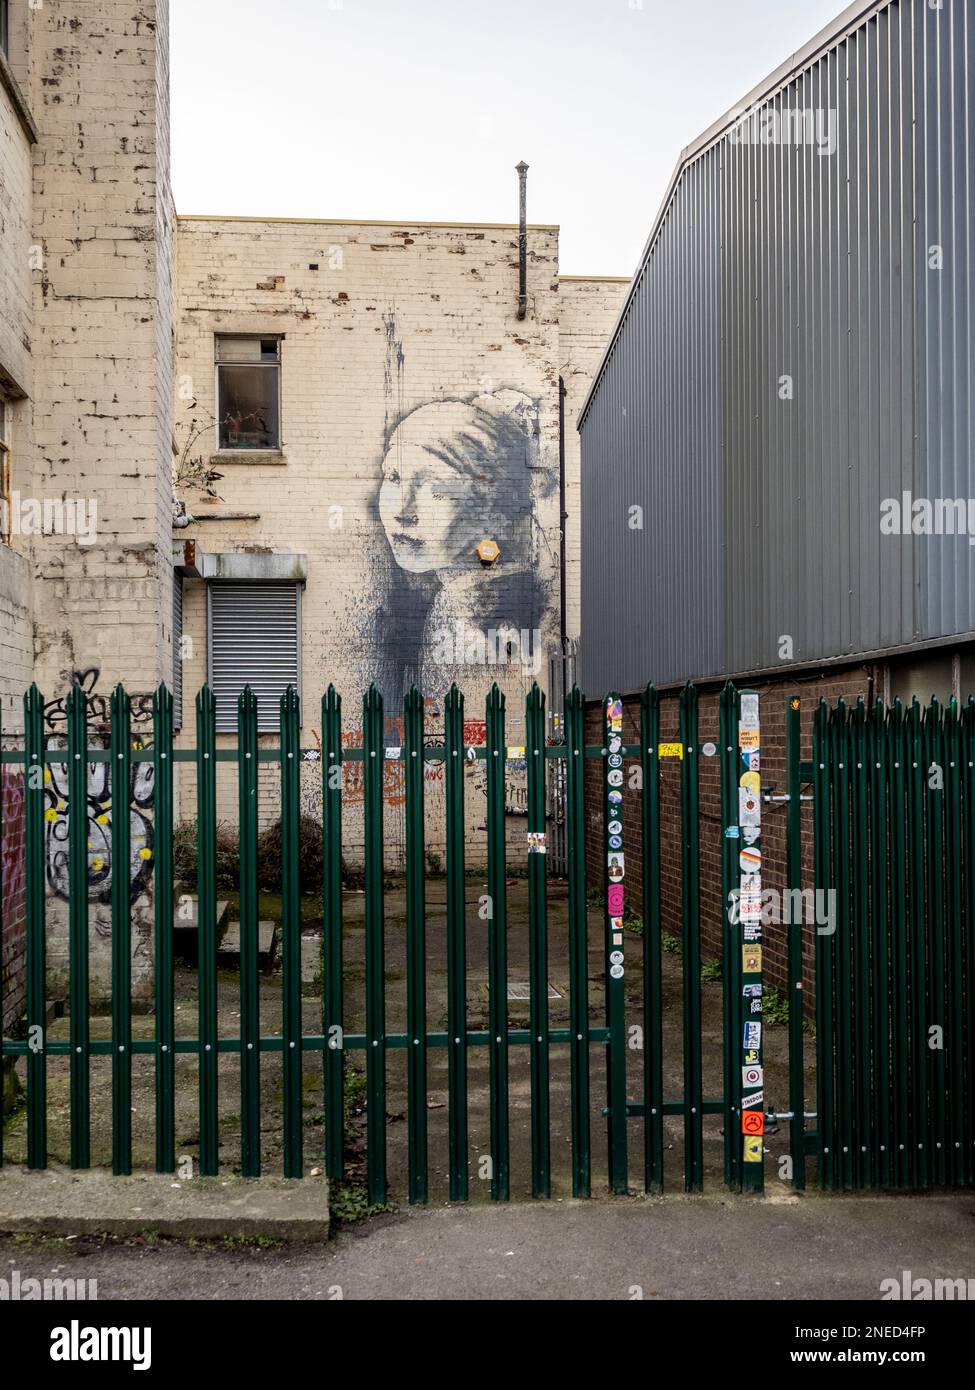 Il murale dei graffiti dei vicoli di Banksy, la ragazza con il timpano forato (ispirato alla pittura di Vermeer) protetto da una recinzione metallica di sicurezza. Bristol. REGNO UNITO Foto Stock